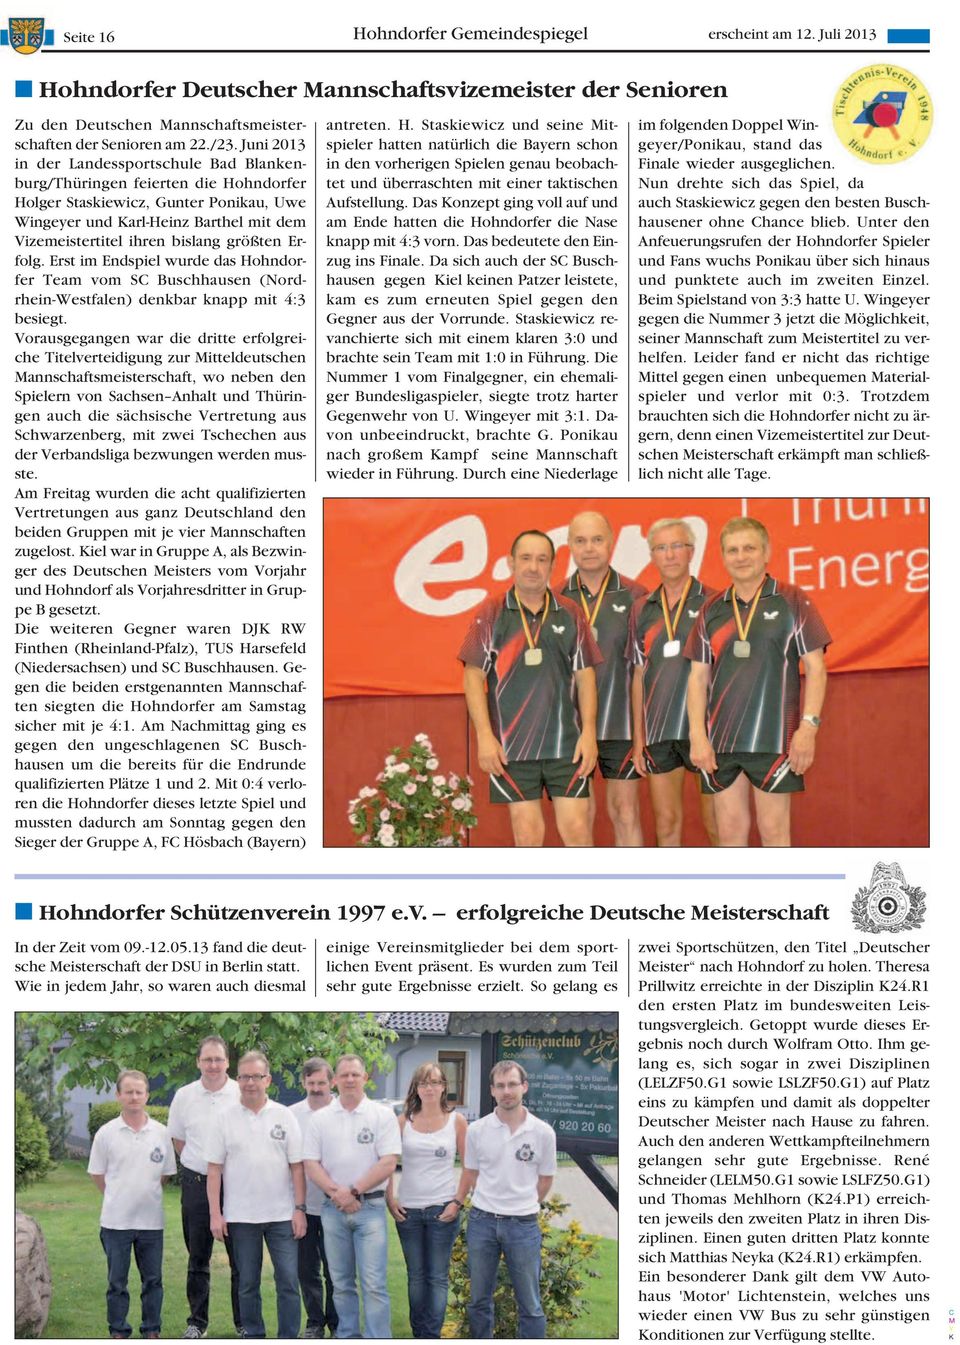 größten Erfolg. Erst im Endspiel wurde das Hohndorfer Team vom S Buschhausen (Nordrhein-Westfalen) denkbar knapp mit 4:3 besiegt.